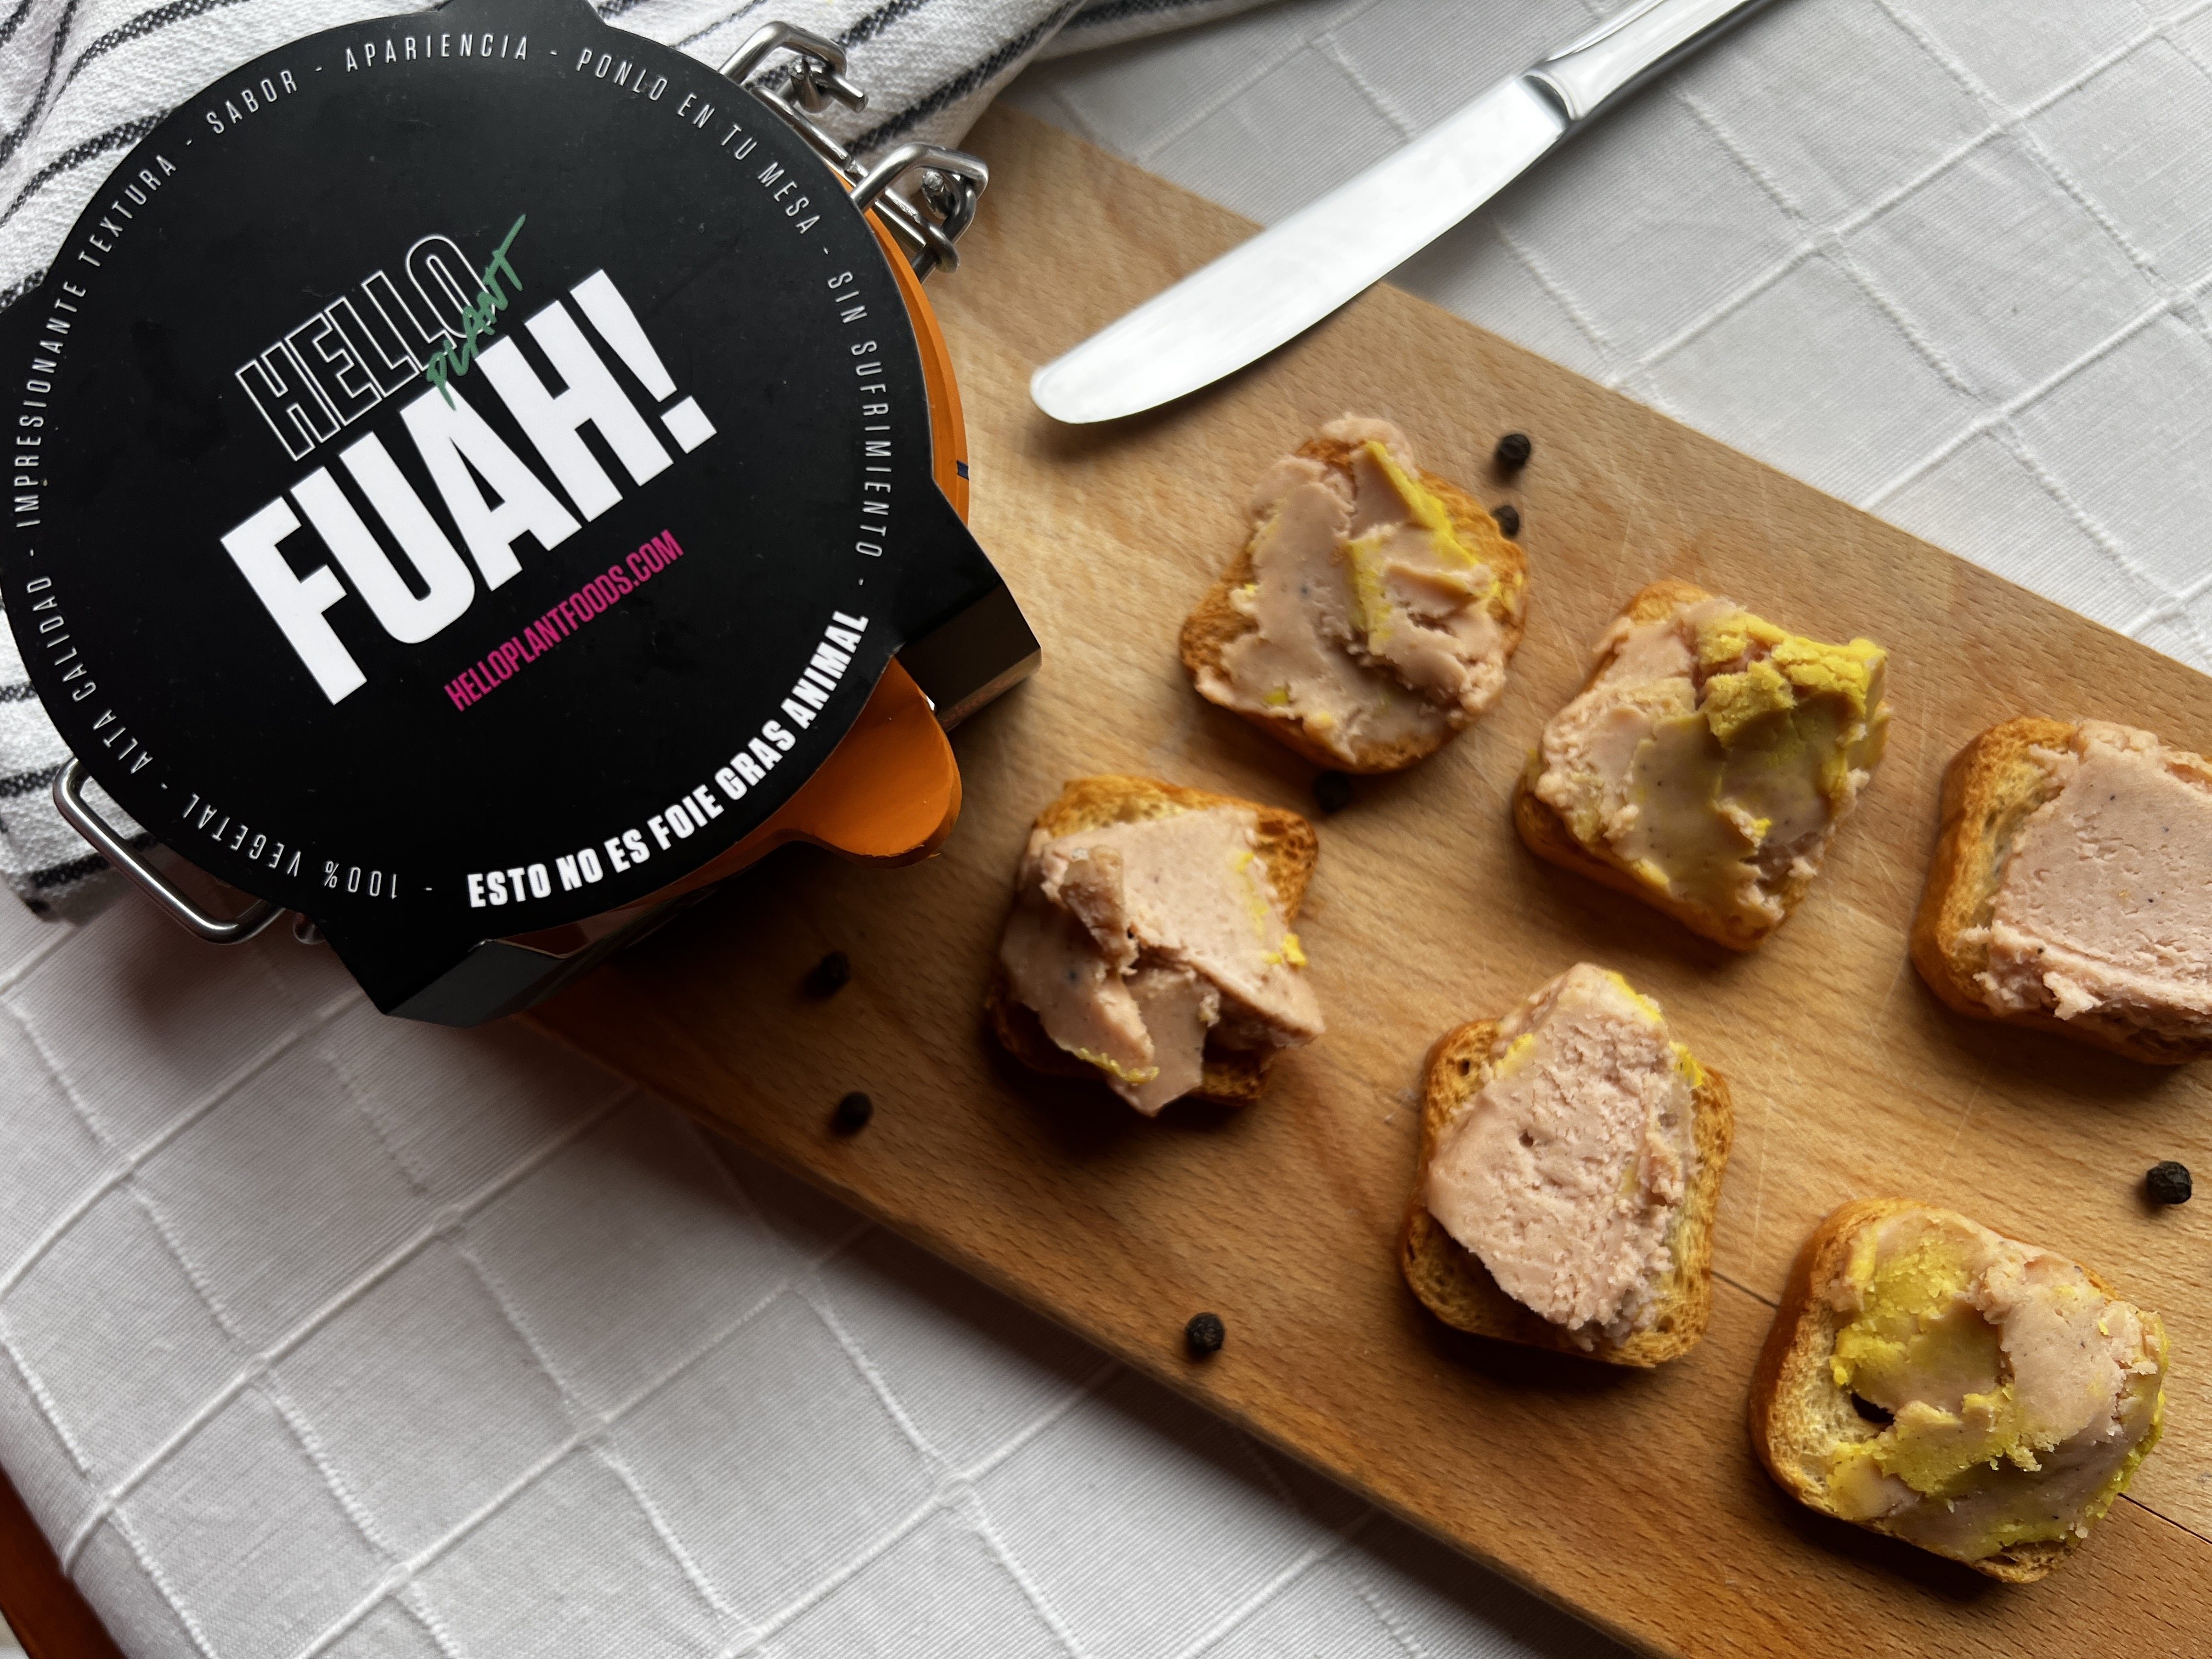 Los creadores de Fuah!, el primer foie vegano, esperan multiplicar por cuatro sus ventas estas Navidades